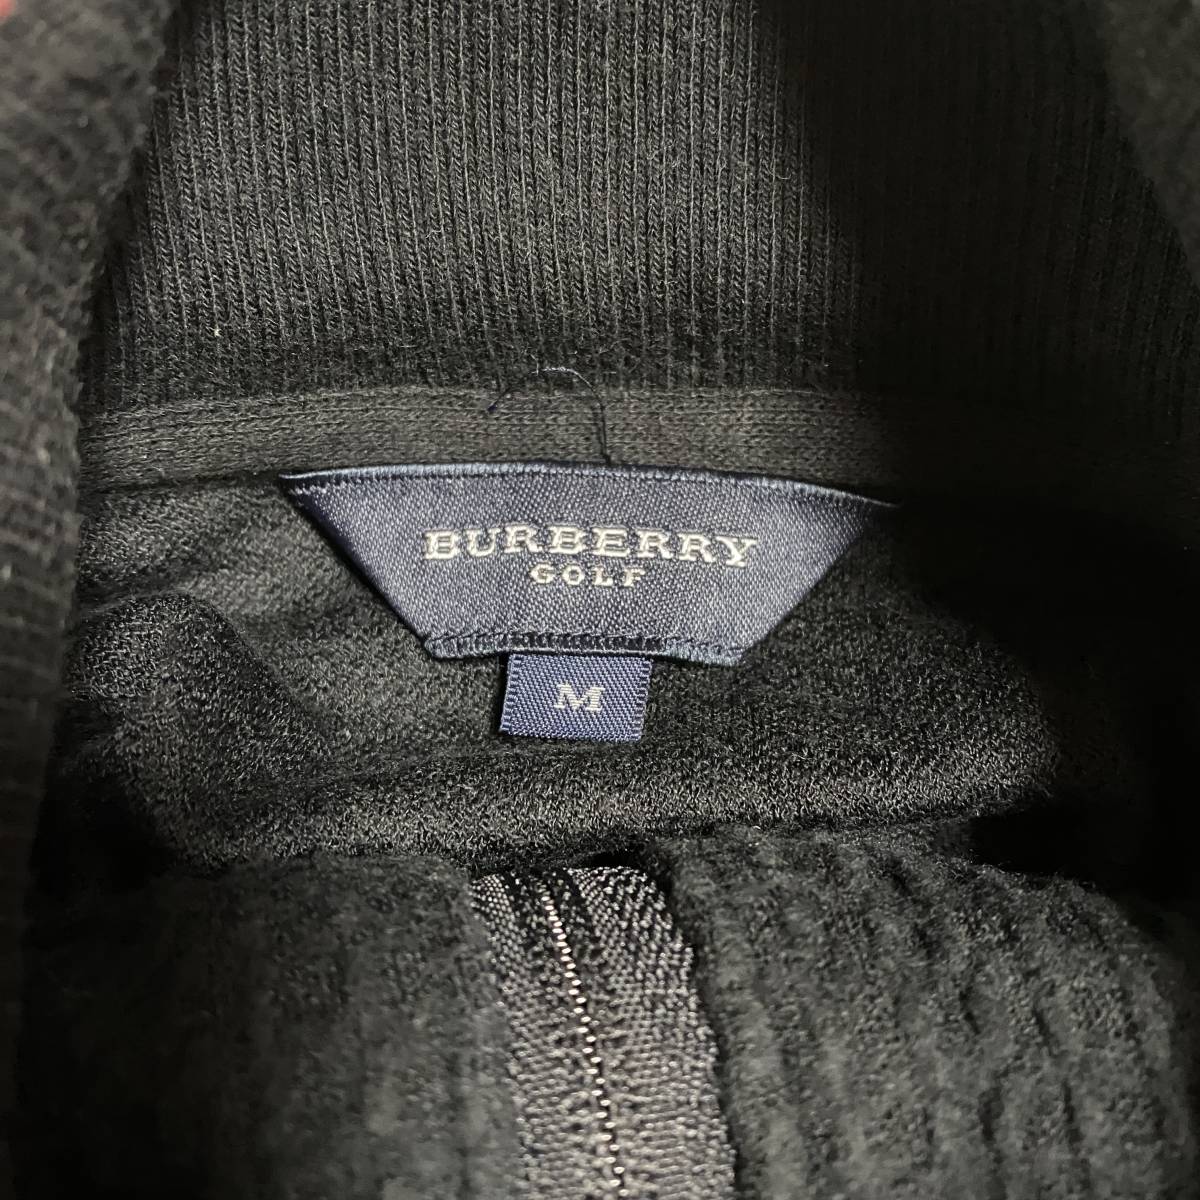  Burberry Golf половина Zip тянуть over тренировочный футболка BURBERRY GOLF сделано в Японии вафля материалы Town Youth ..205